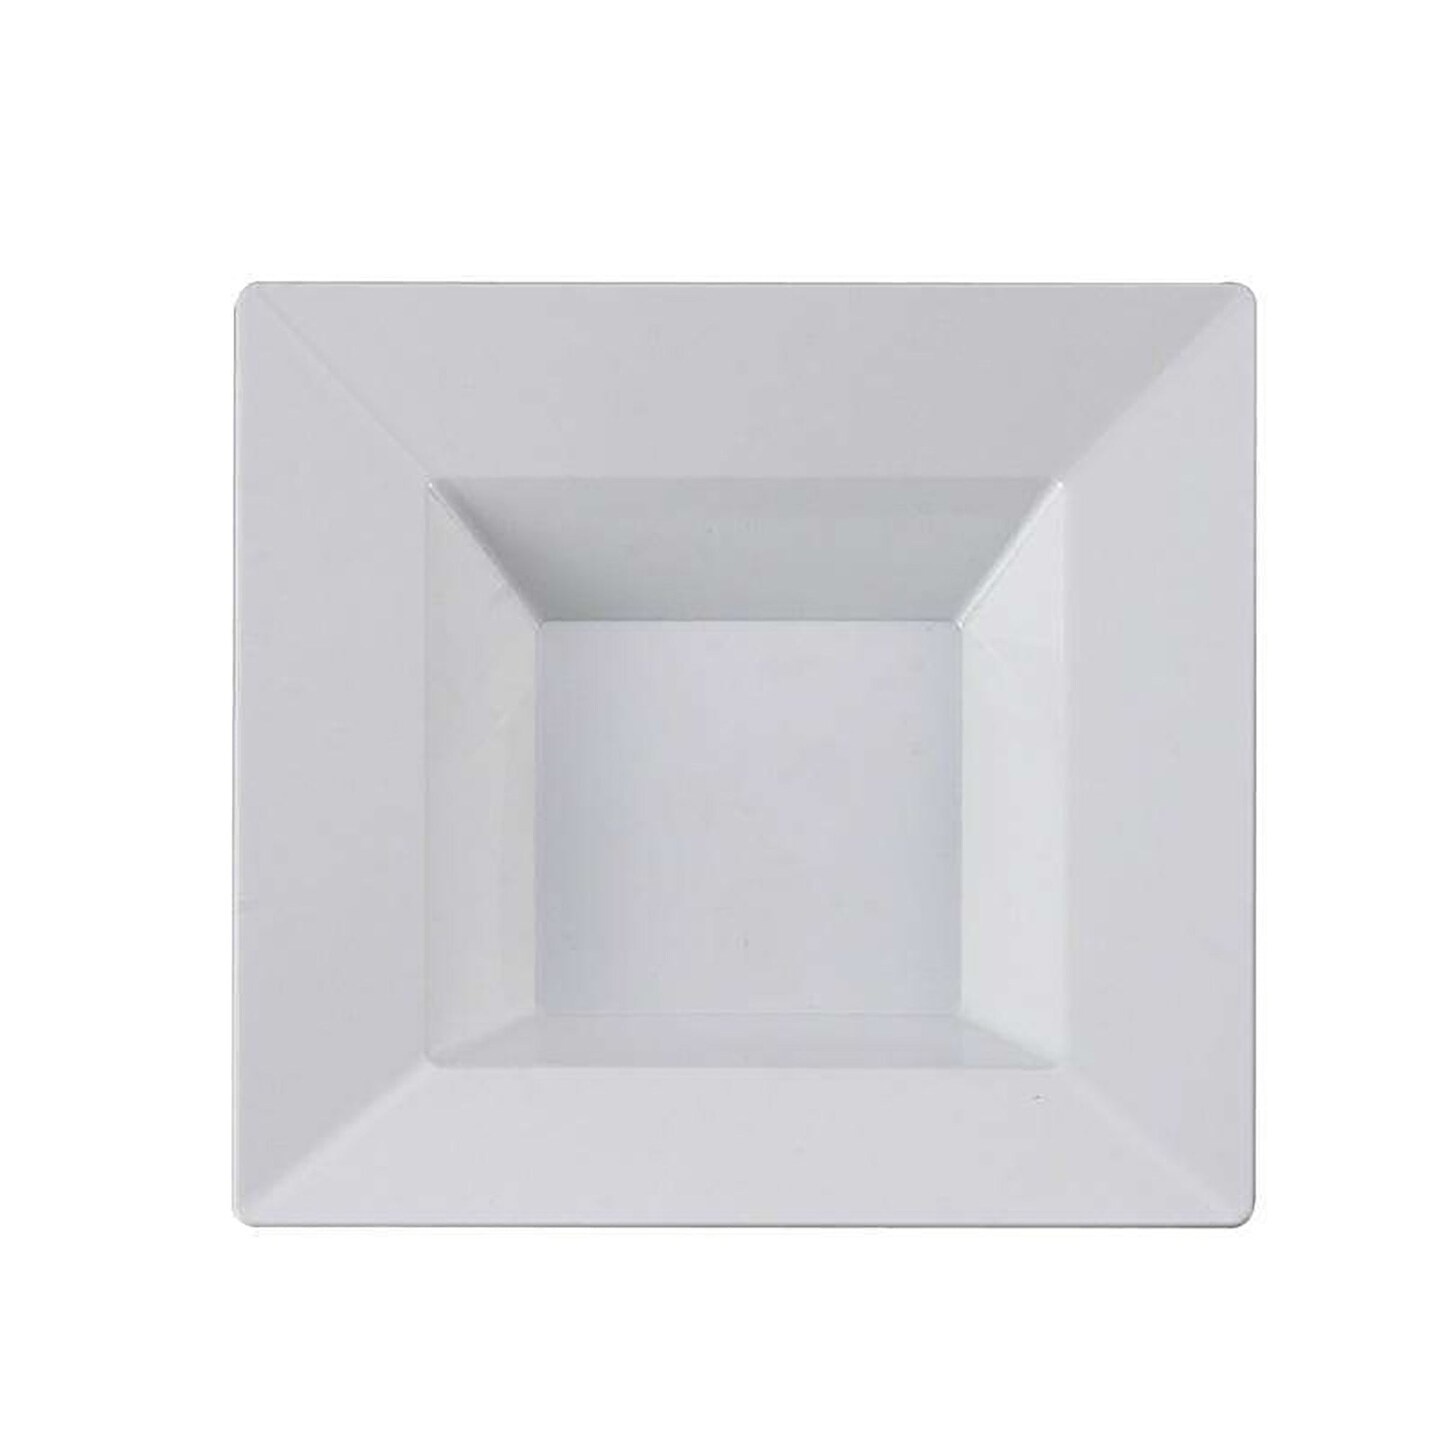 White Square Plastic Dessert Bowls - 5 Ounce (120 Bowls)